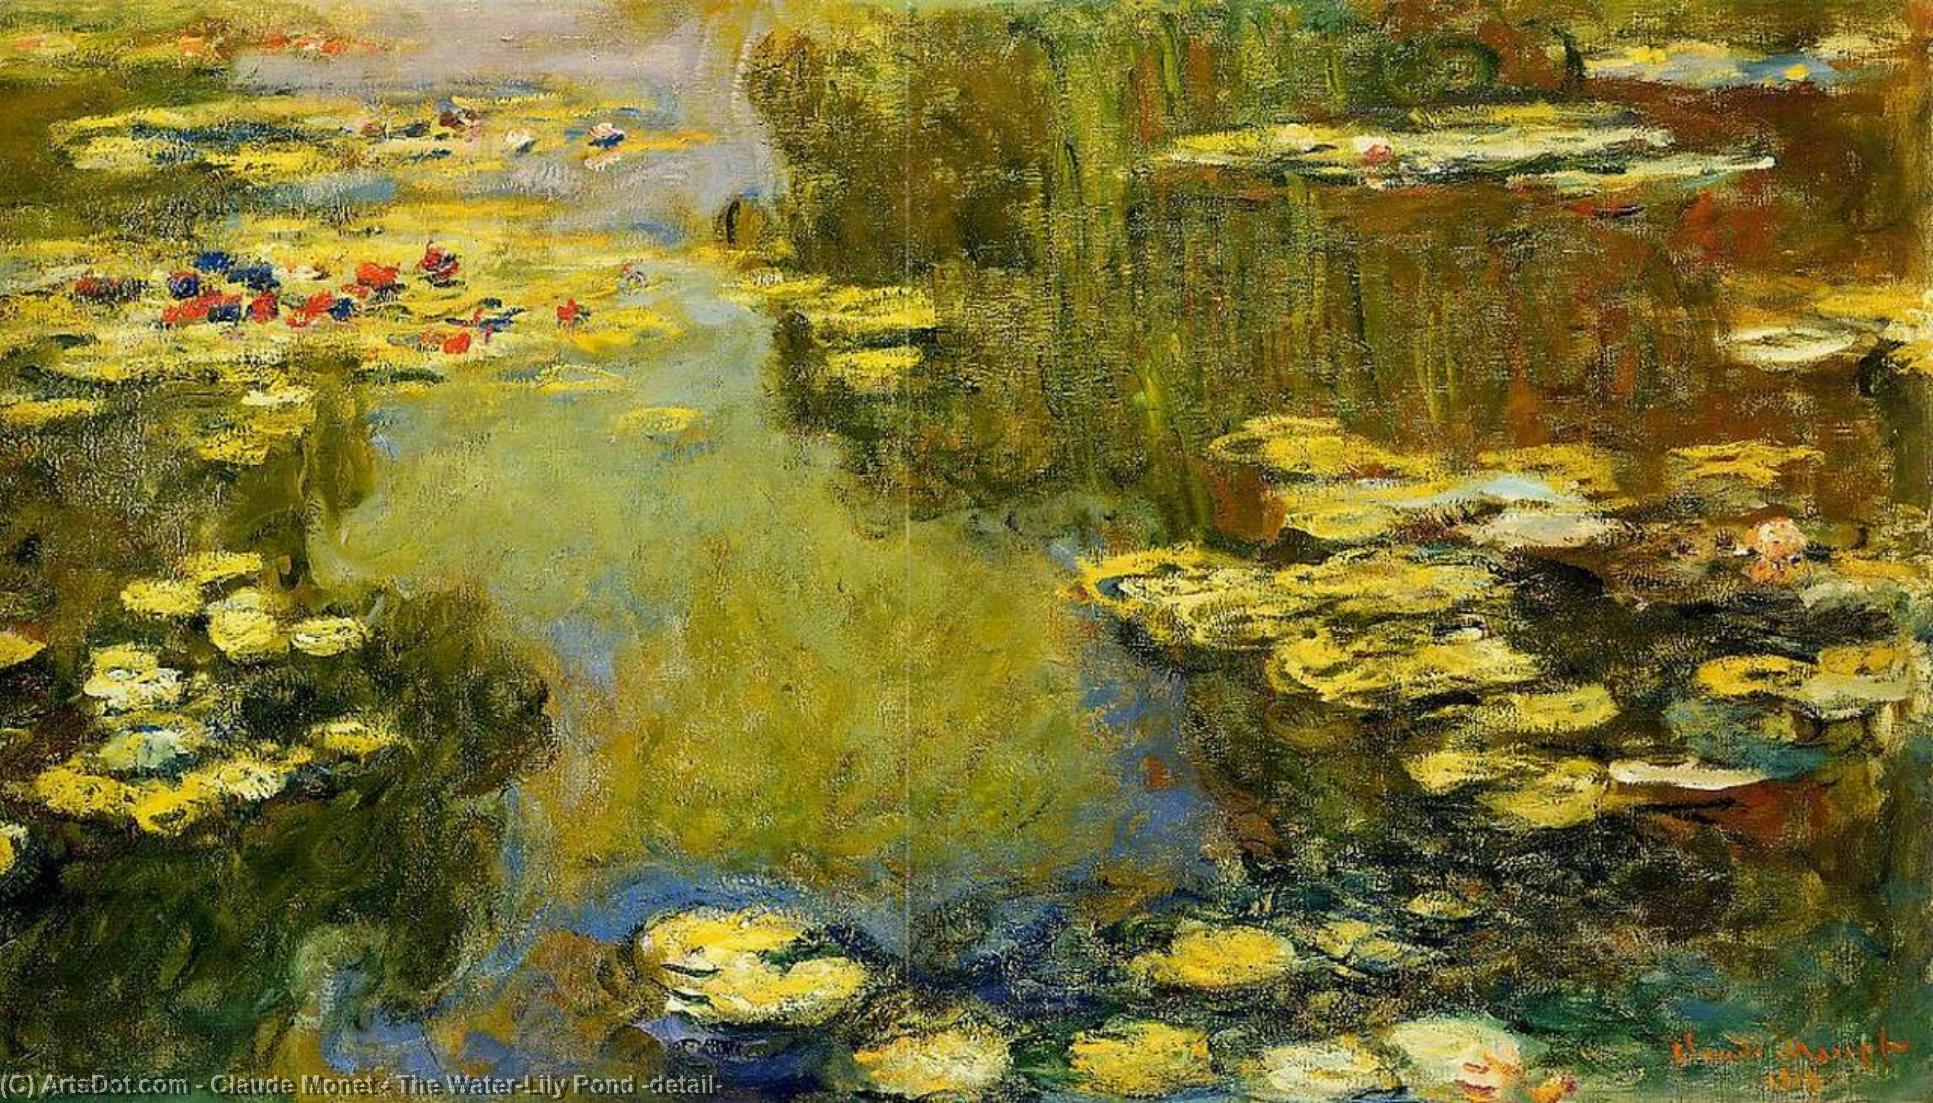 WikiOO.org - אנציקלופדיה לאמנויות יפות - ציור, יצירות אמנות Claude Monet - The Water-Lily Pond (detail)